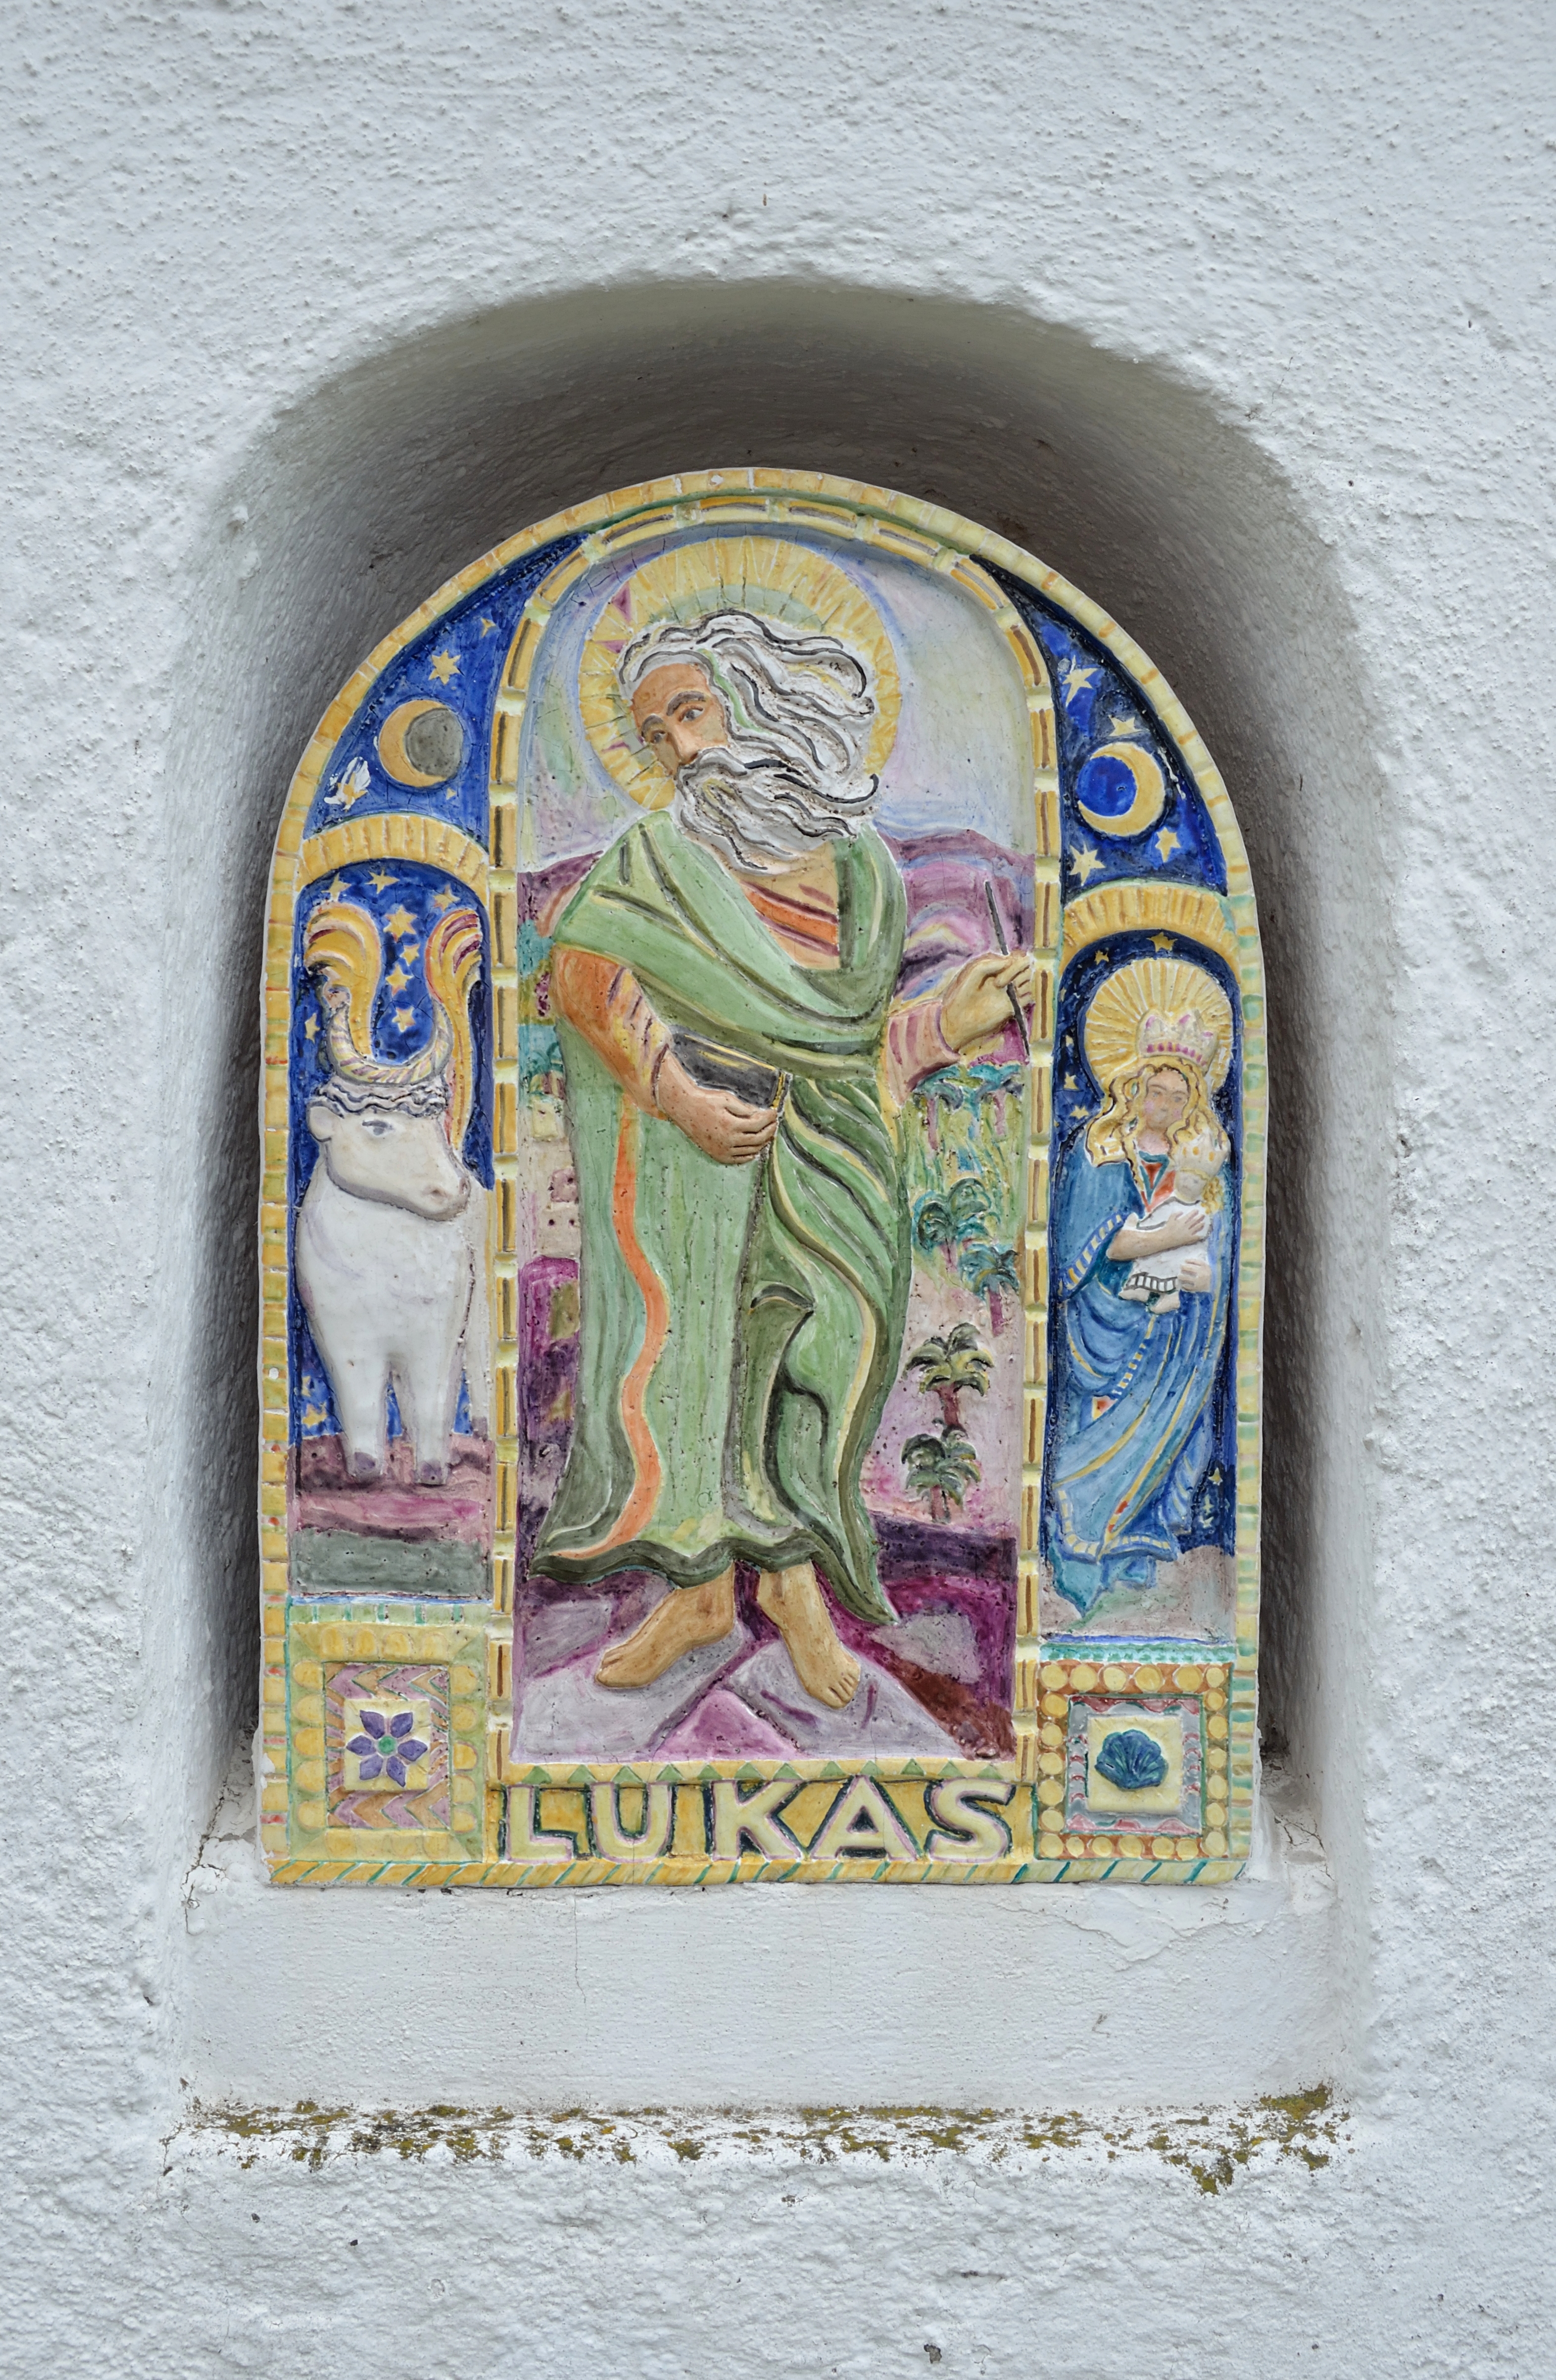 Evangelist shrine Saint Luke 02, St. Ägydius, Fischbach, Styria